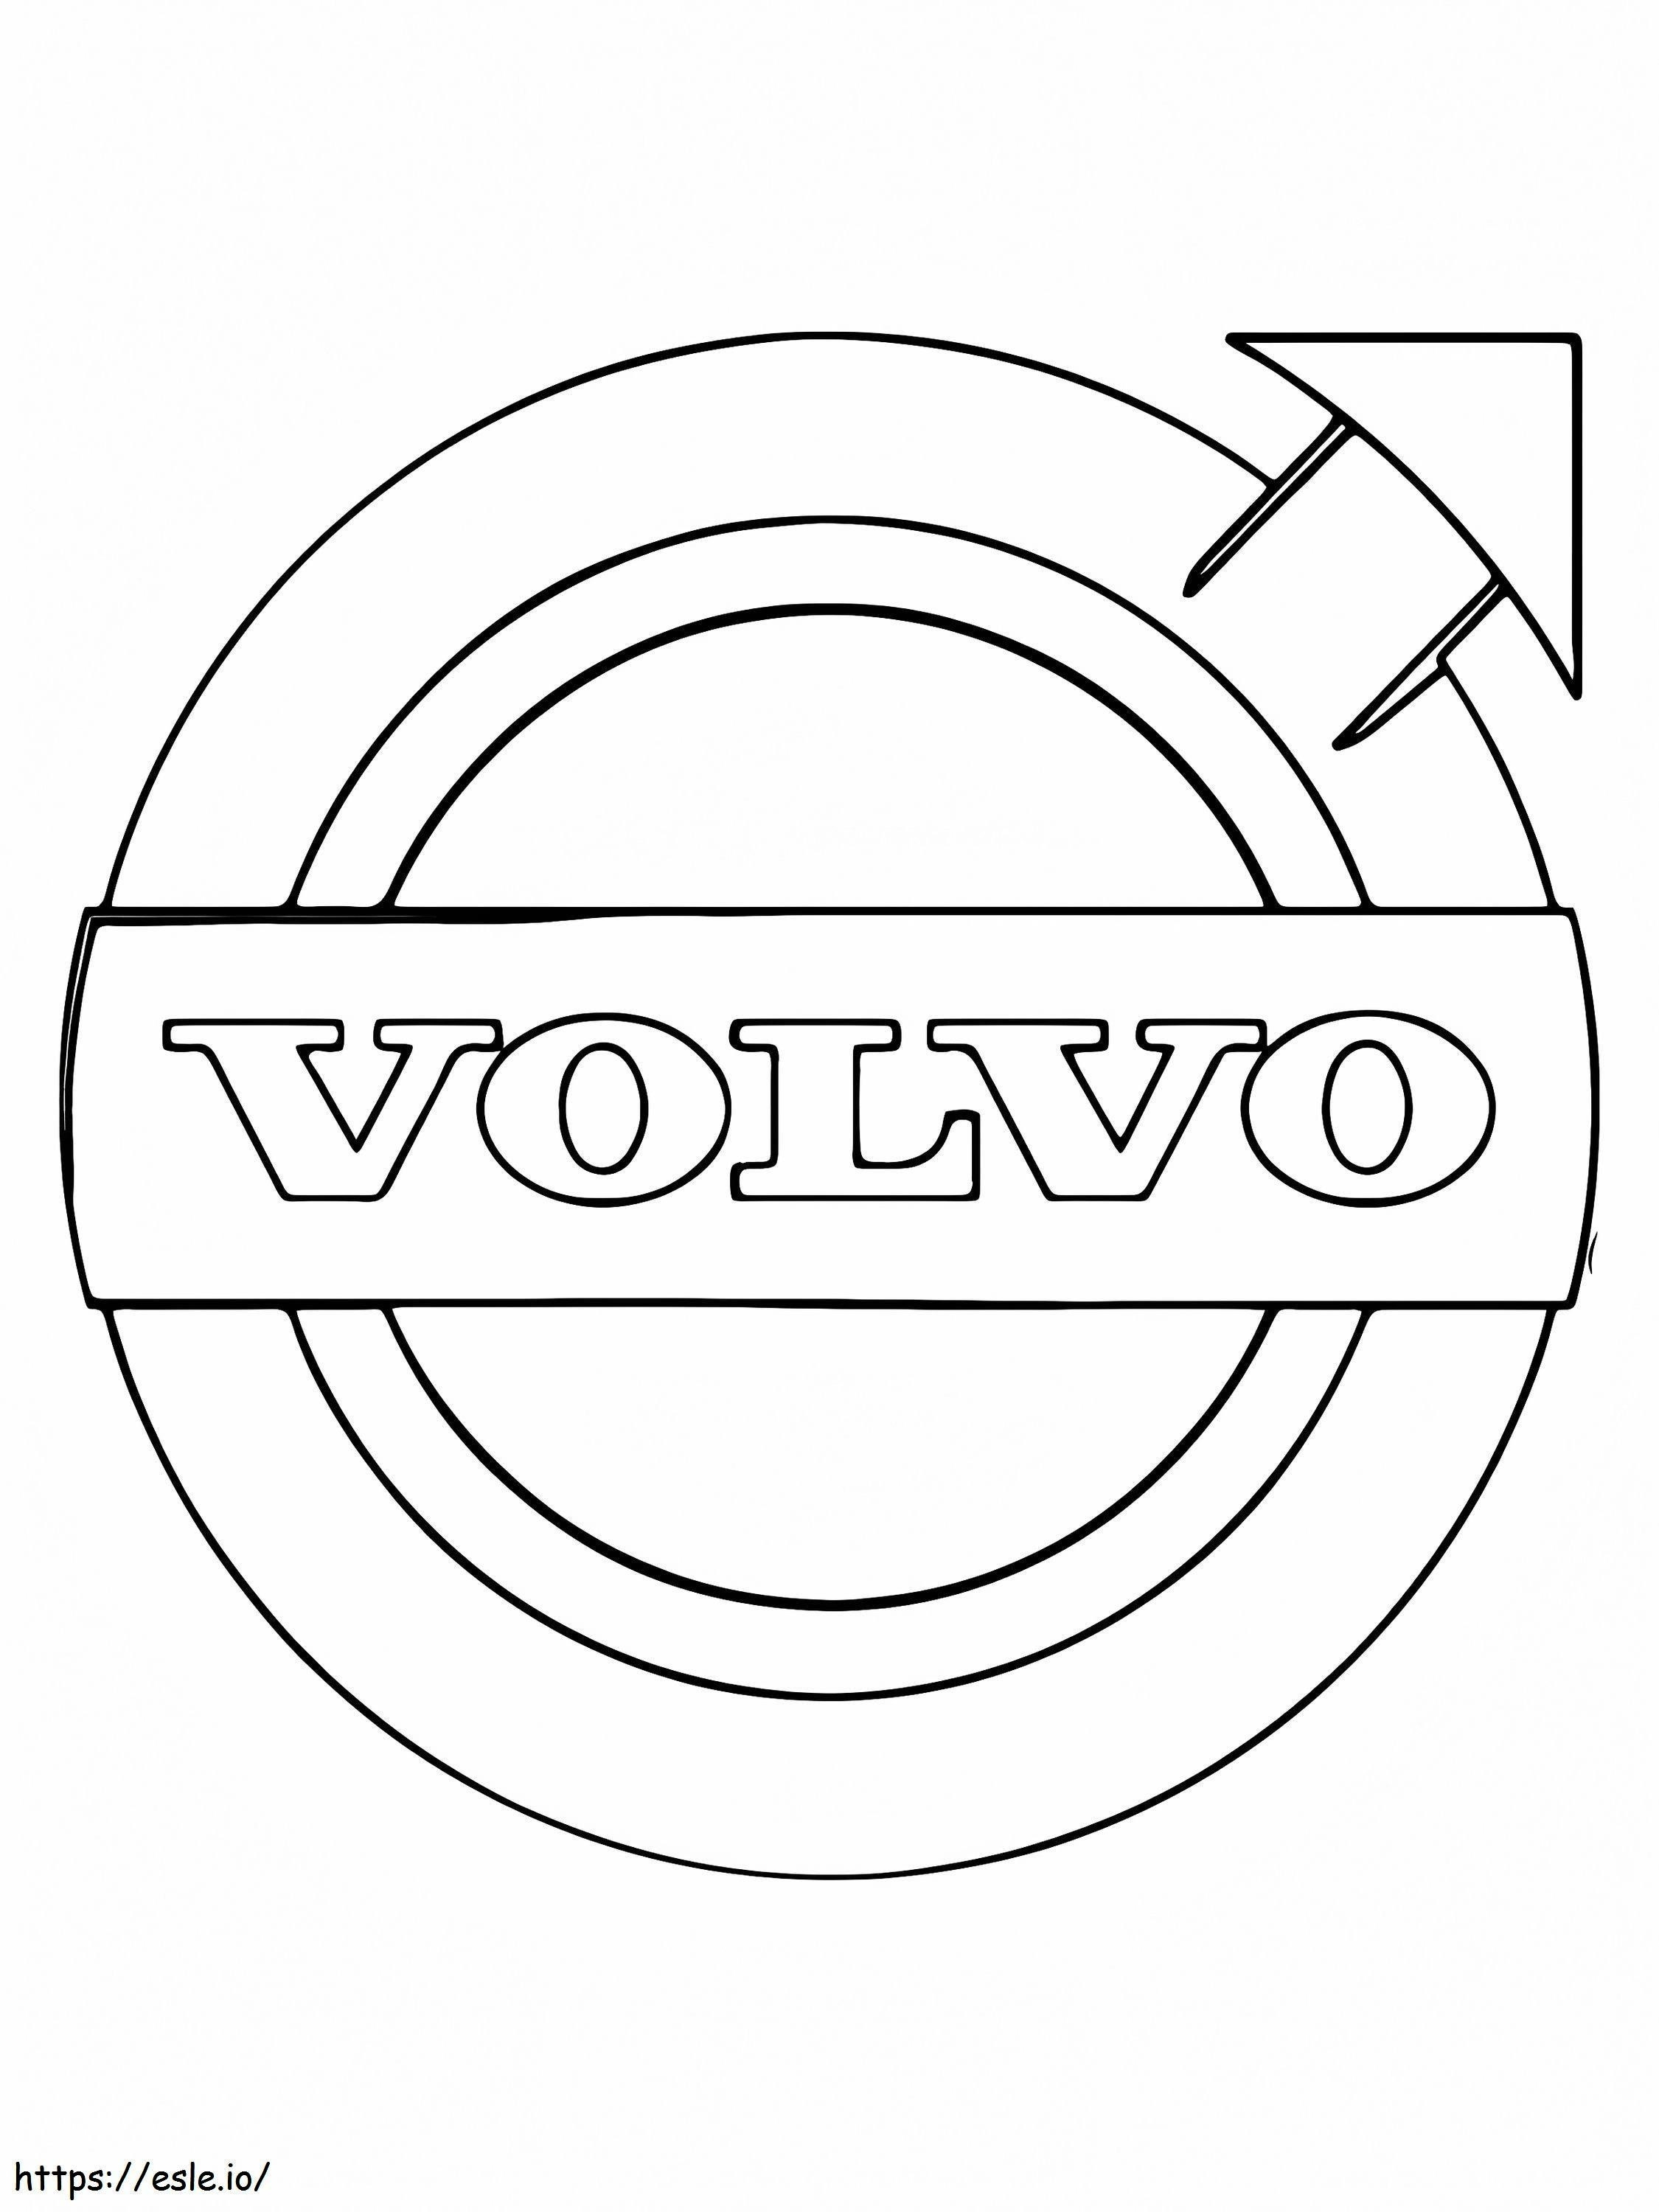 Logo samochodu Volvo kolorowanka